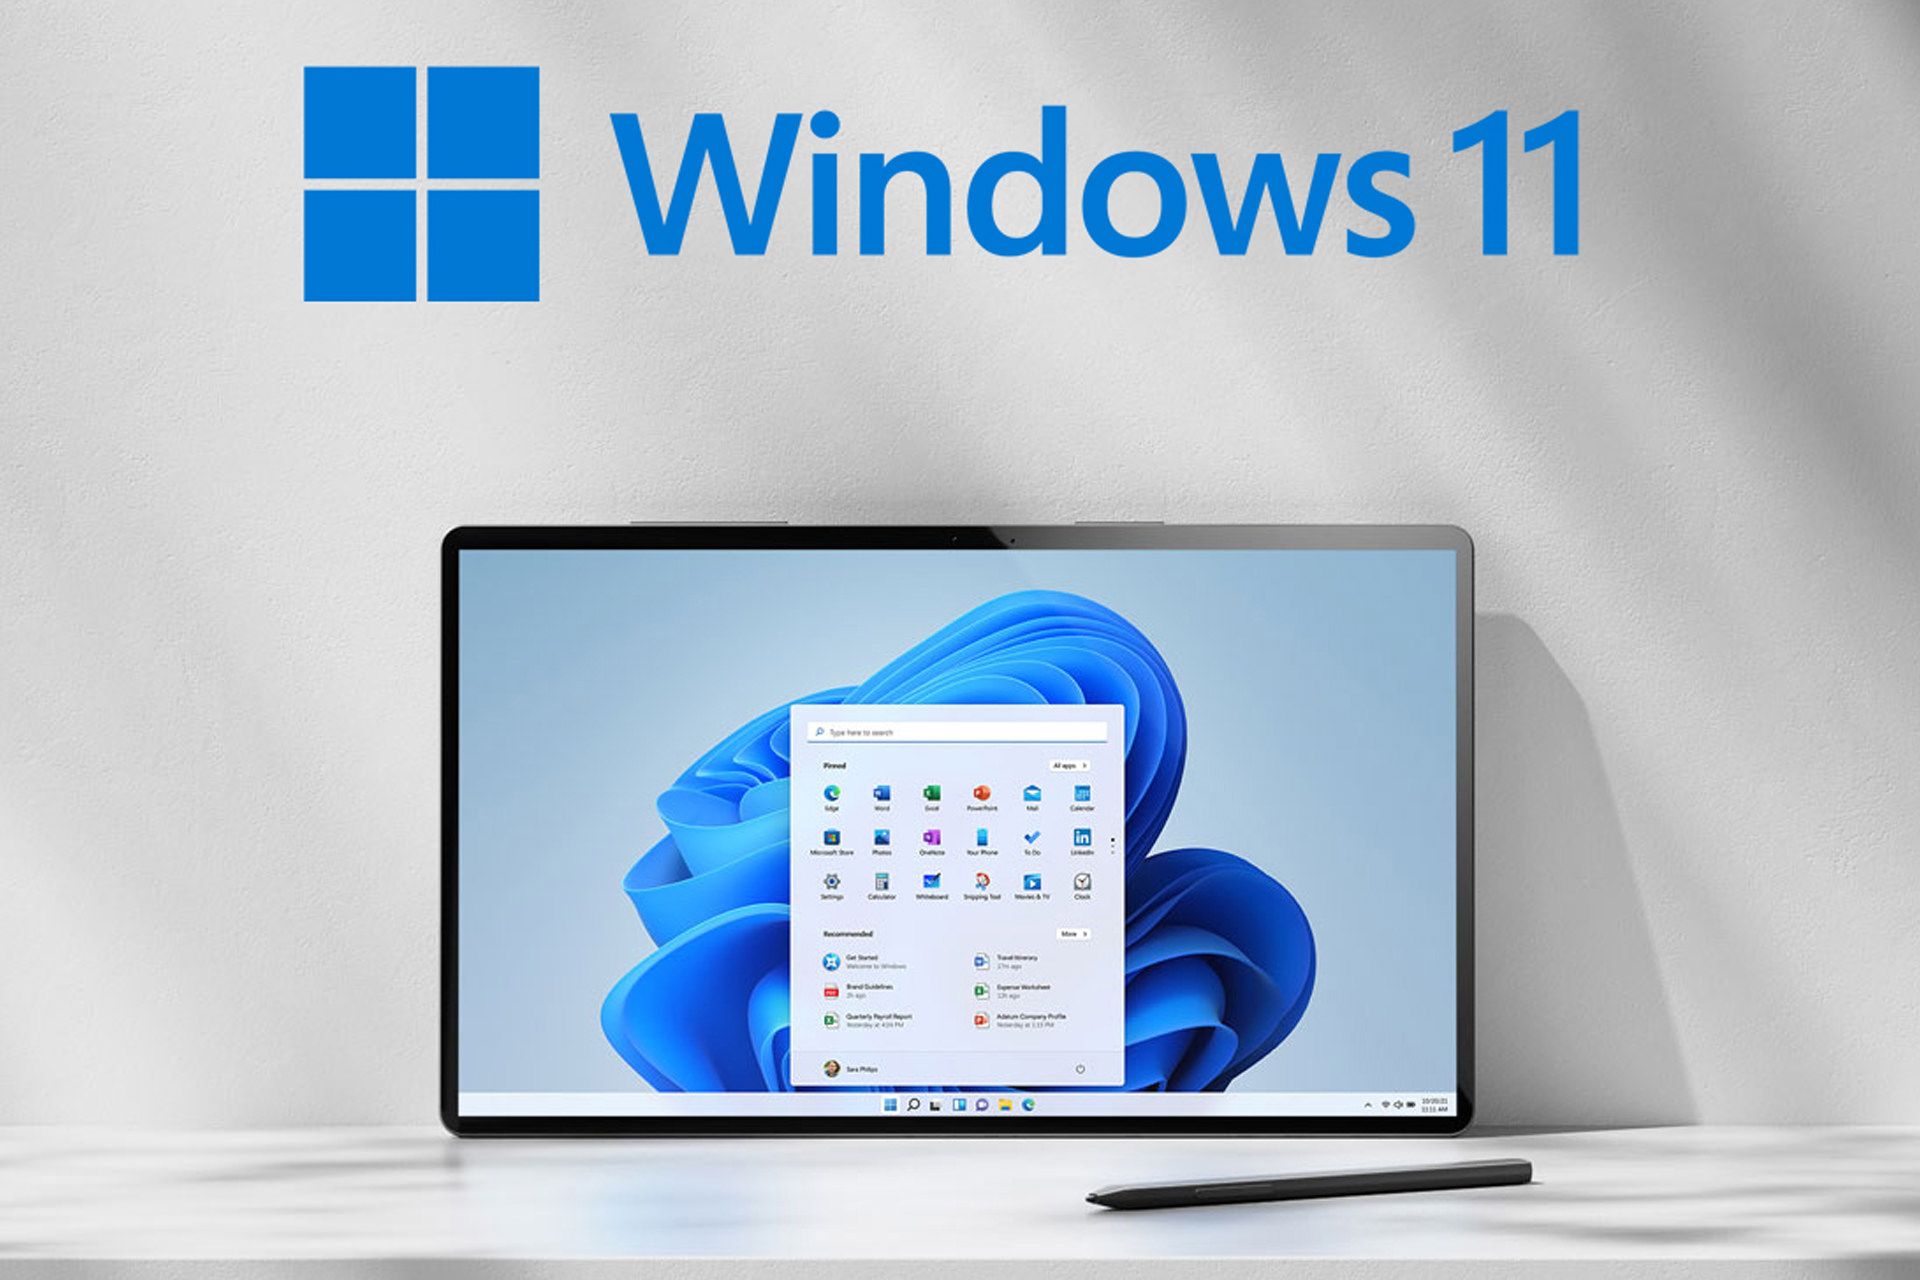 ویندوز ۱۱ / Windows 11 در حال اجرا روی کامپیوتر